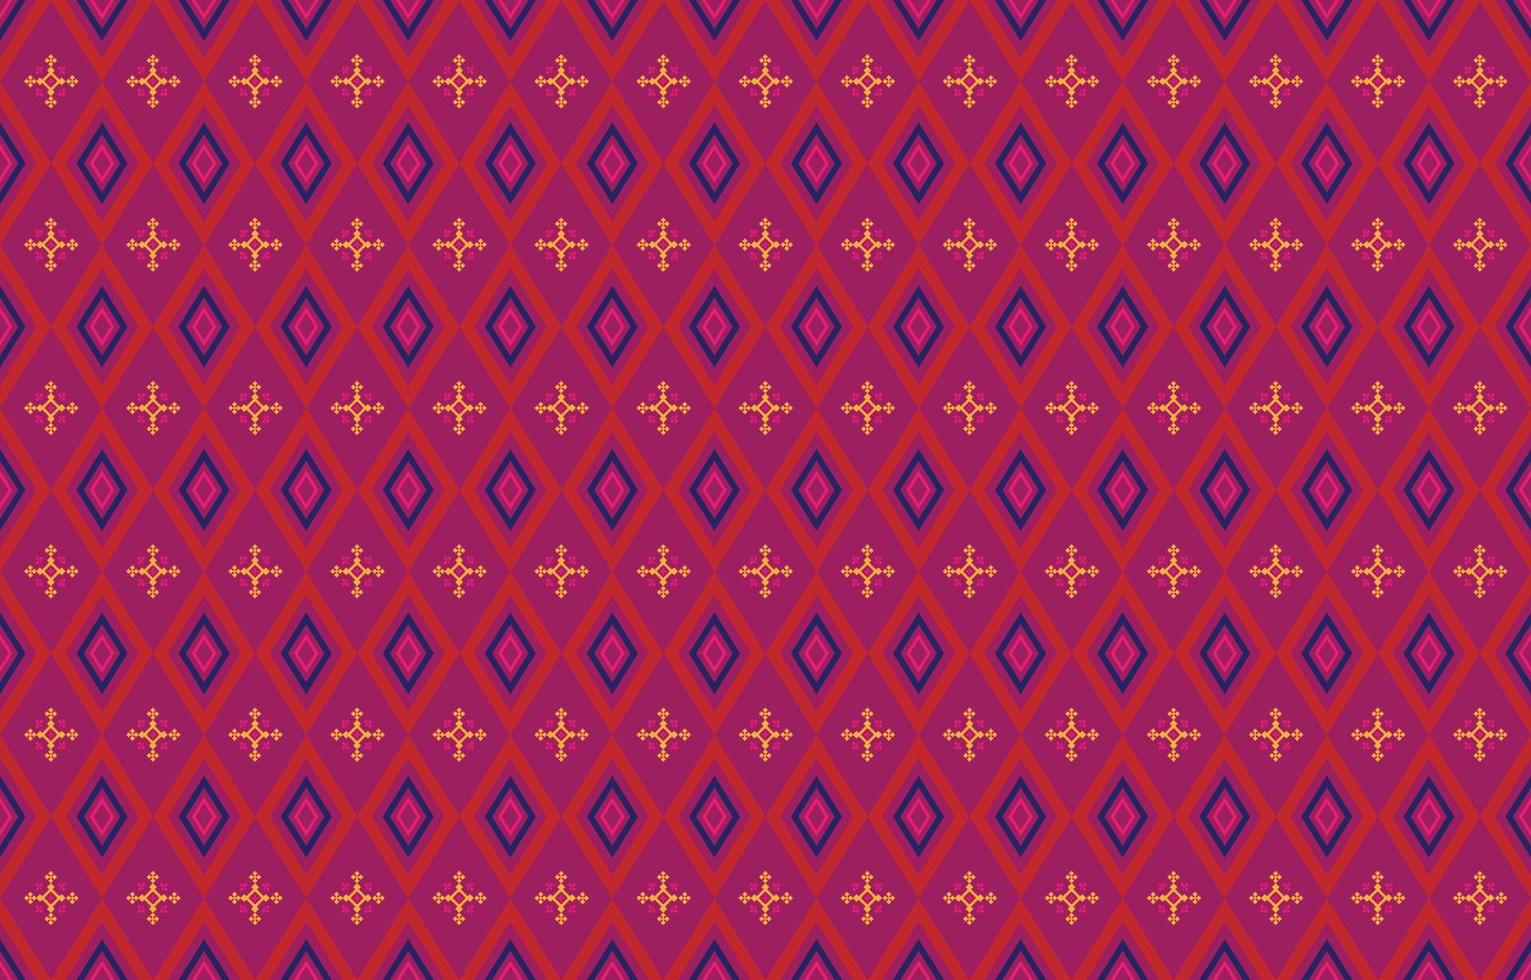 patrones geométricos y tribales abstractos, diseño de uso, patrones de tela local, diseño inspirado en las tribus indígenas. ilustración vectorial geométrica vector